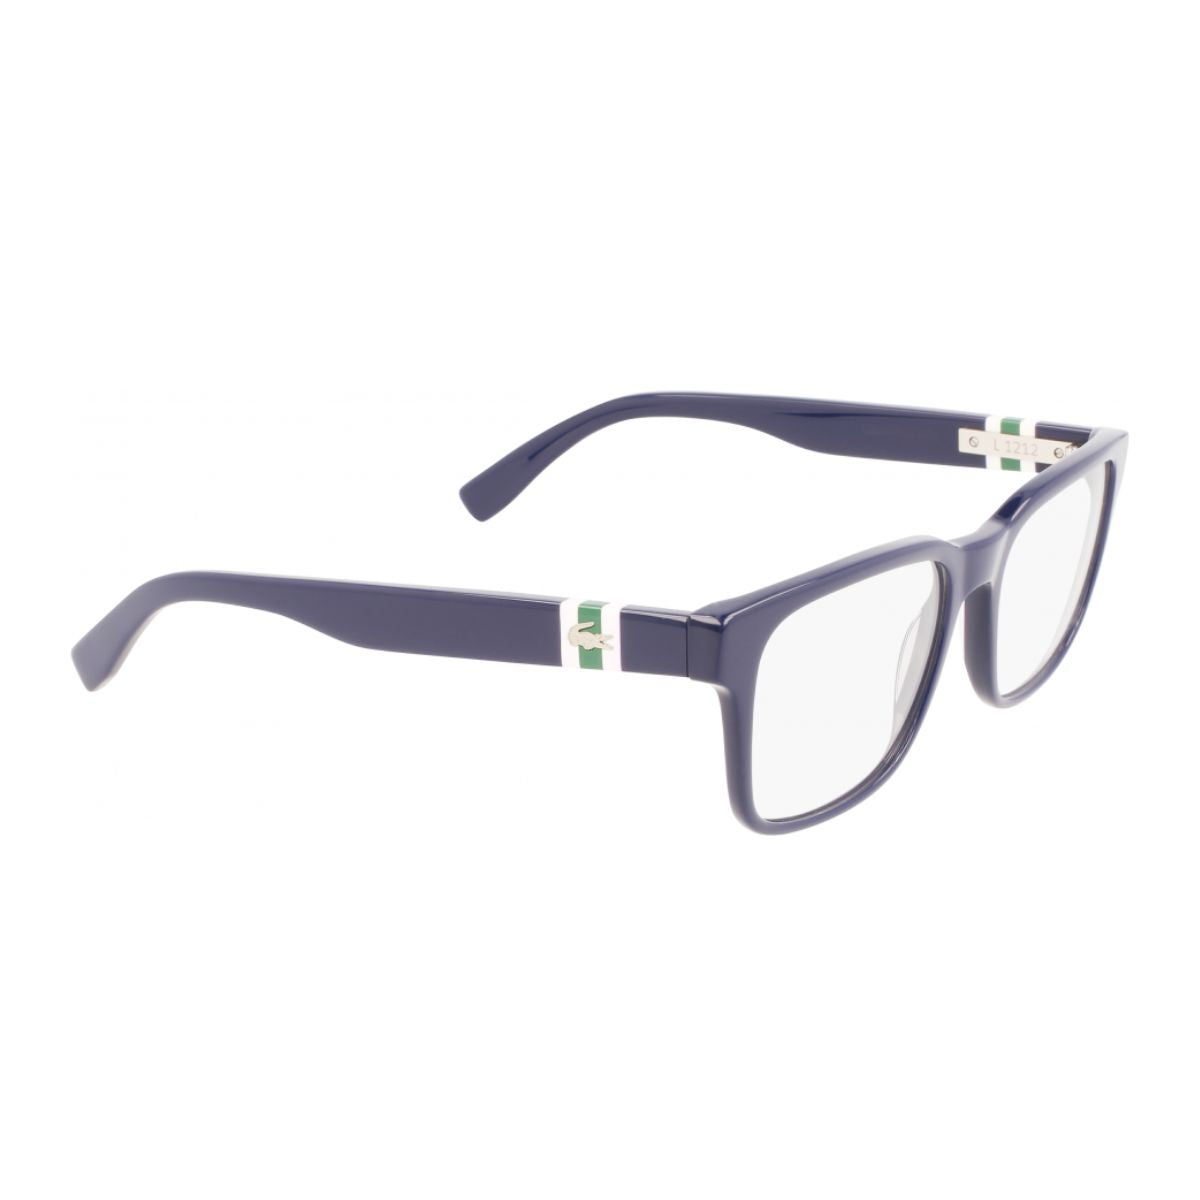 "Lacoste 2905 400 optical eyewear frame for men and women at optorium"